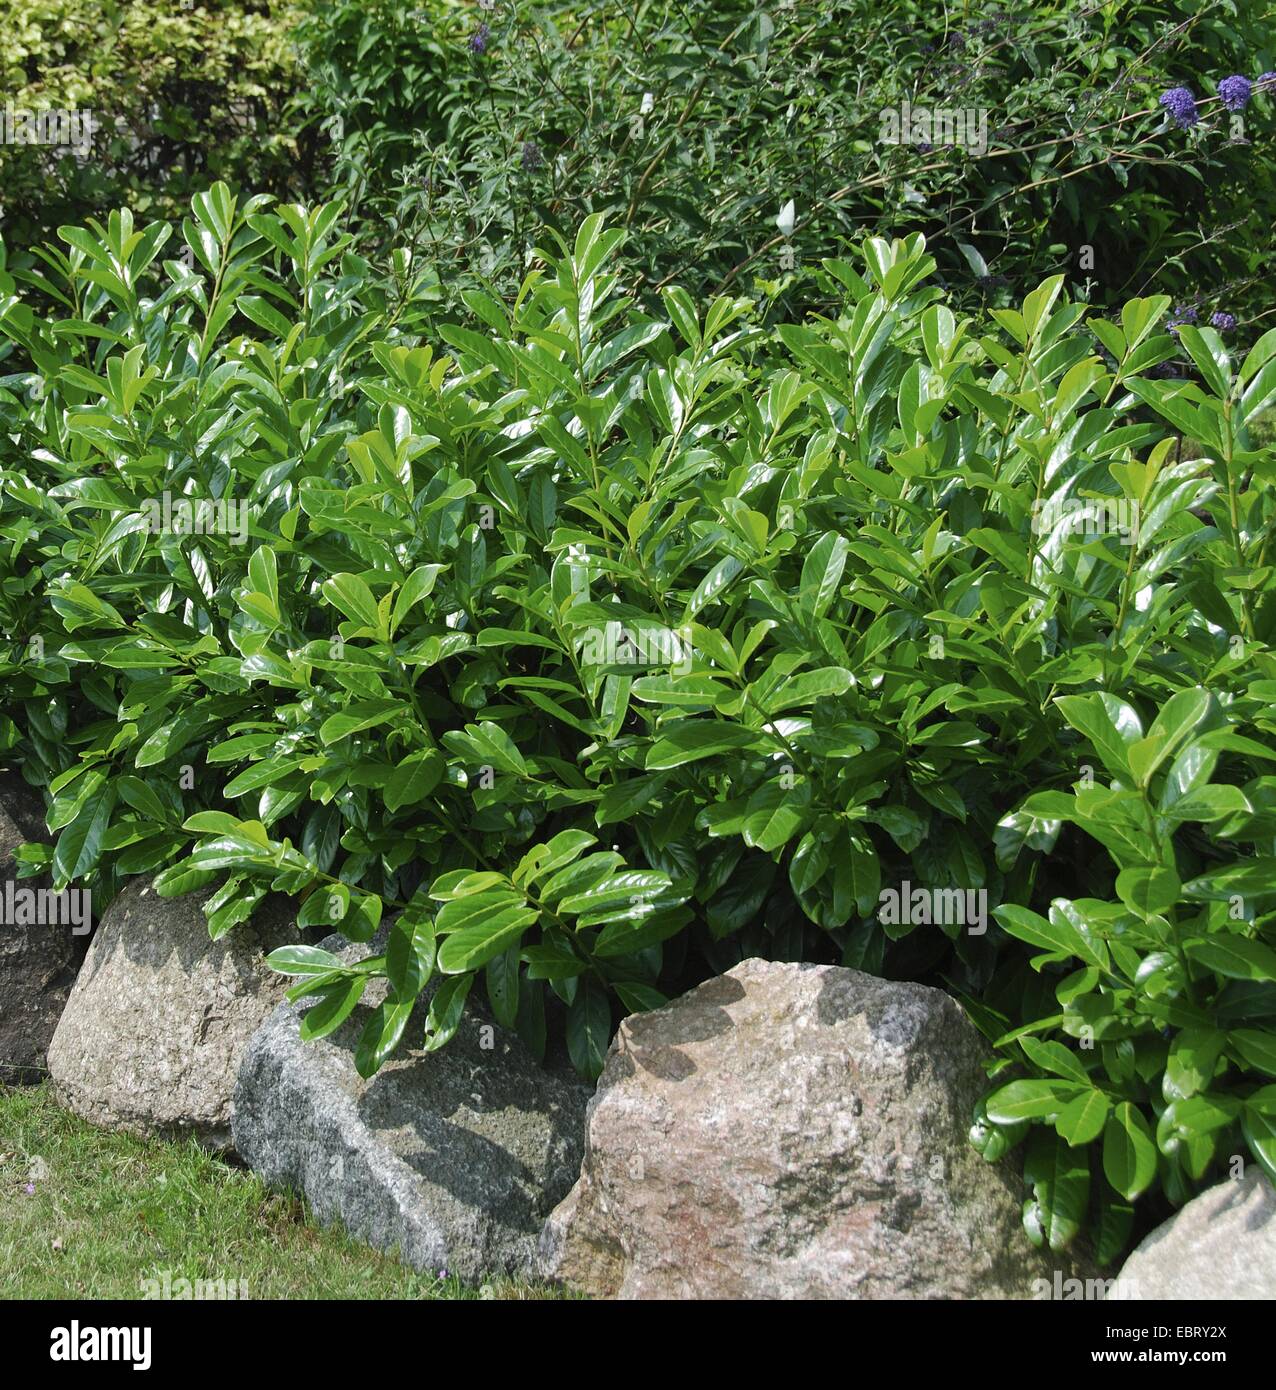 cherry-laurel (Prunus laurocerasus 'Caucasica', Prunus laurocerasus Caucasica), cultivar Caucasica Stock Photo